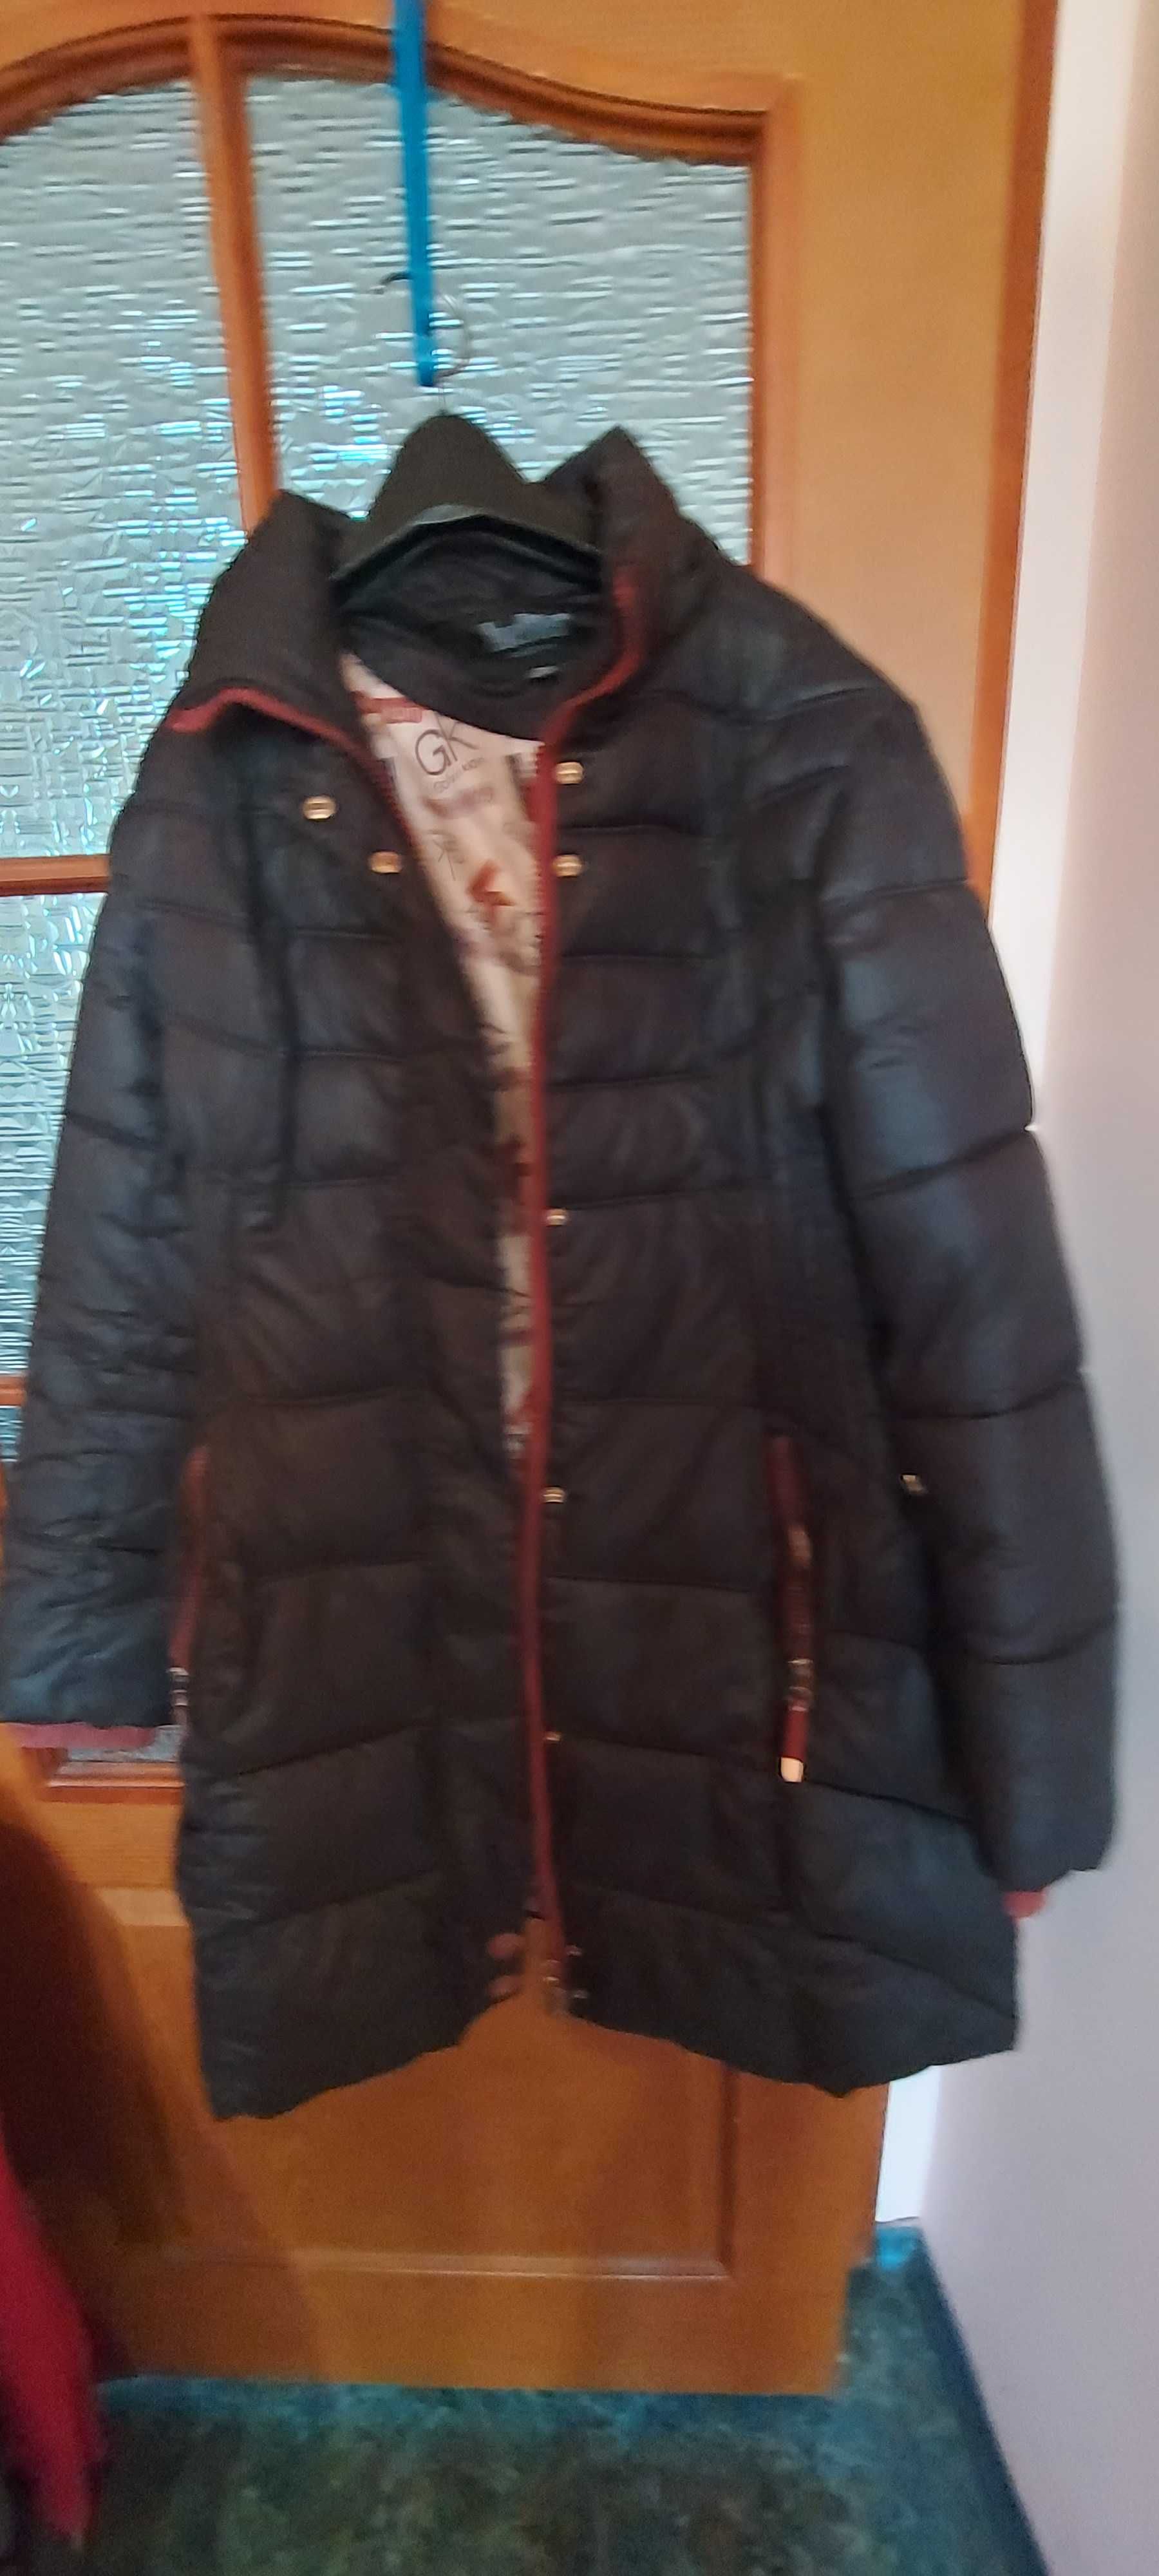 Зимние куртки размер 48-50